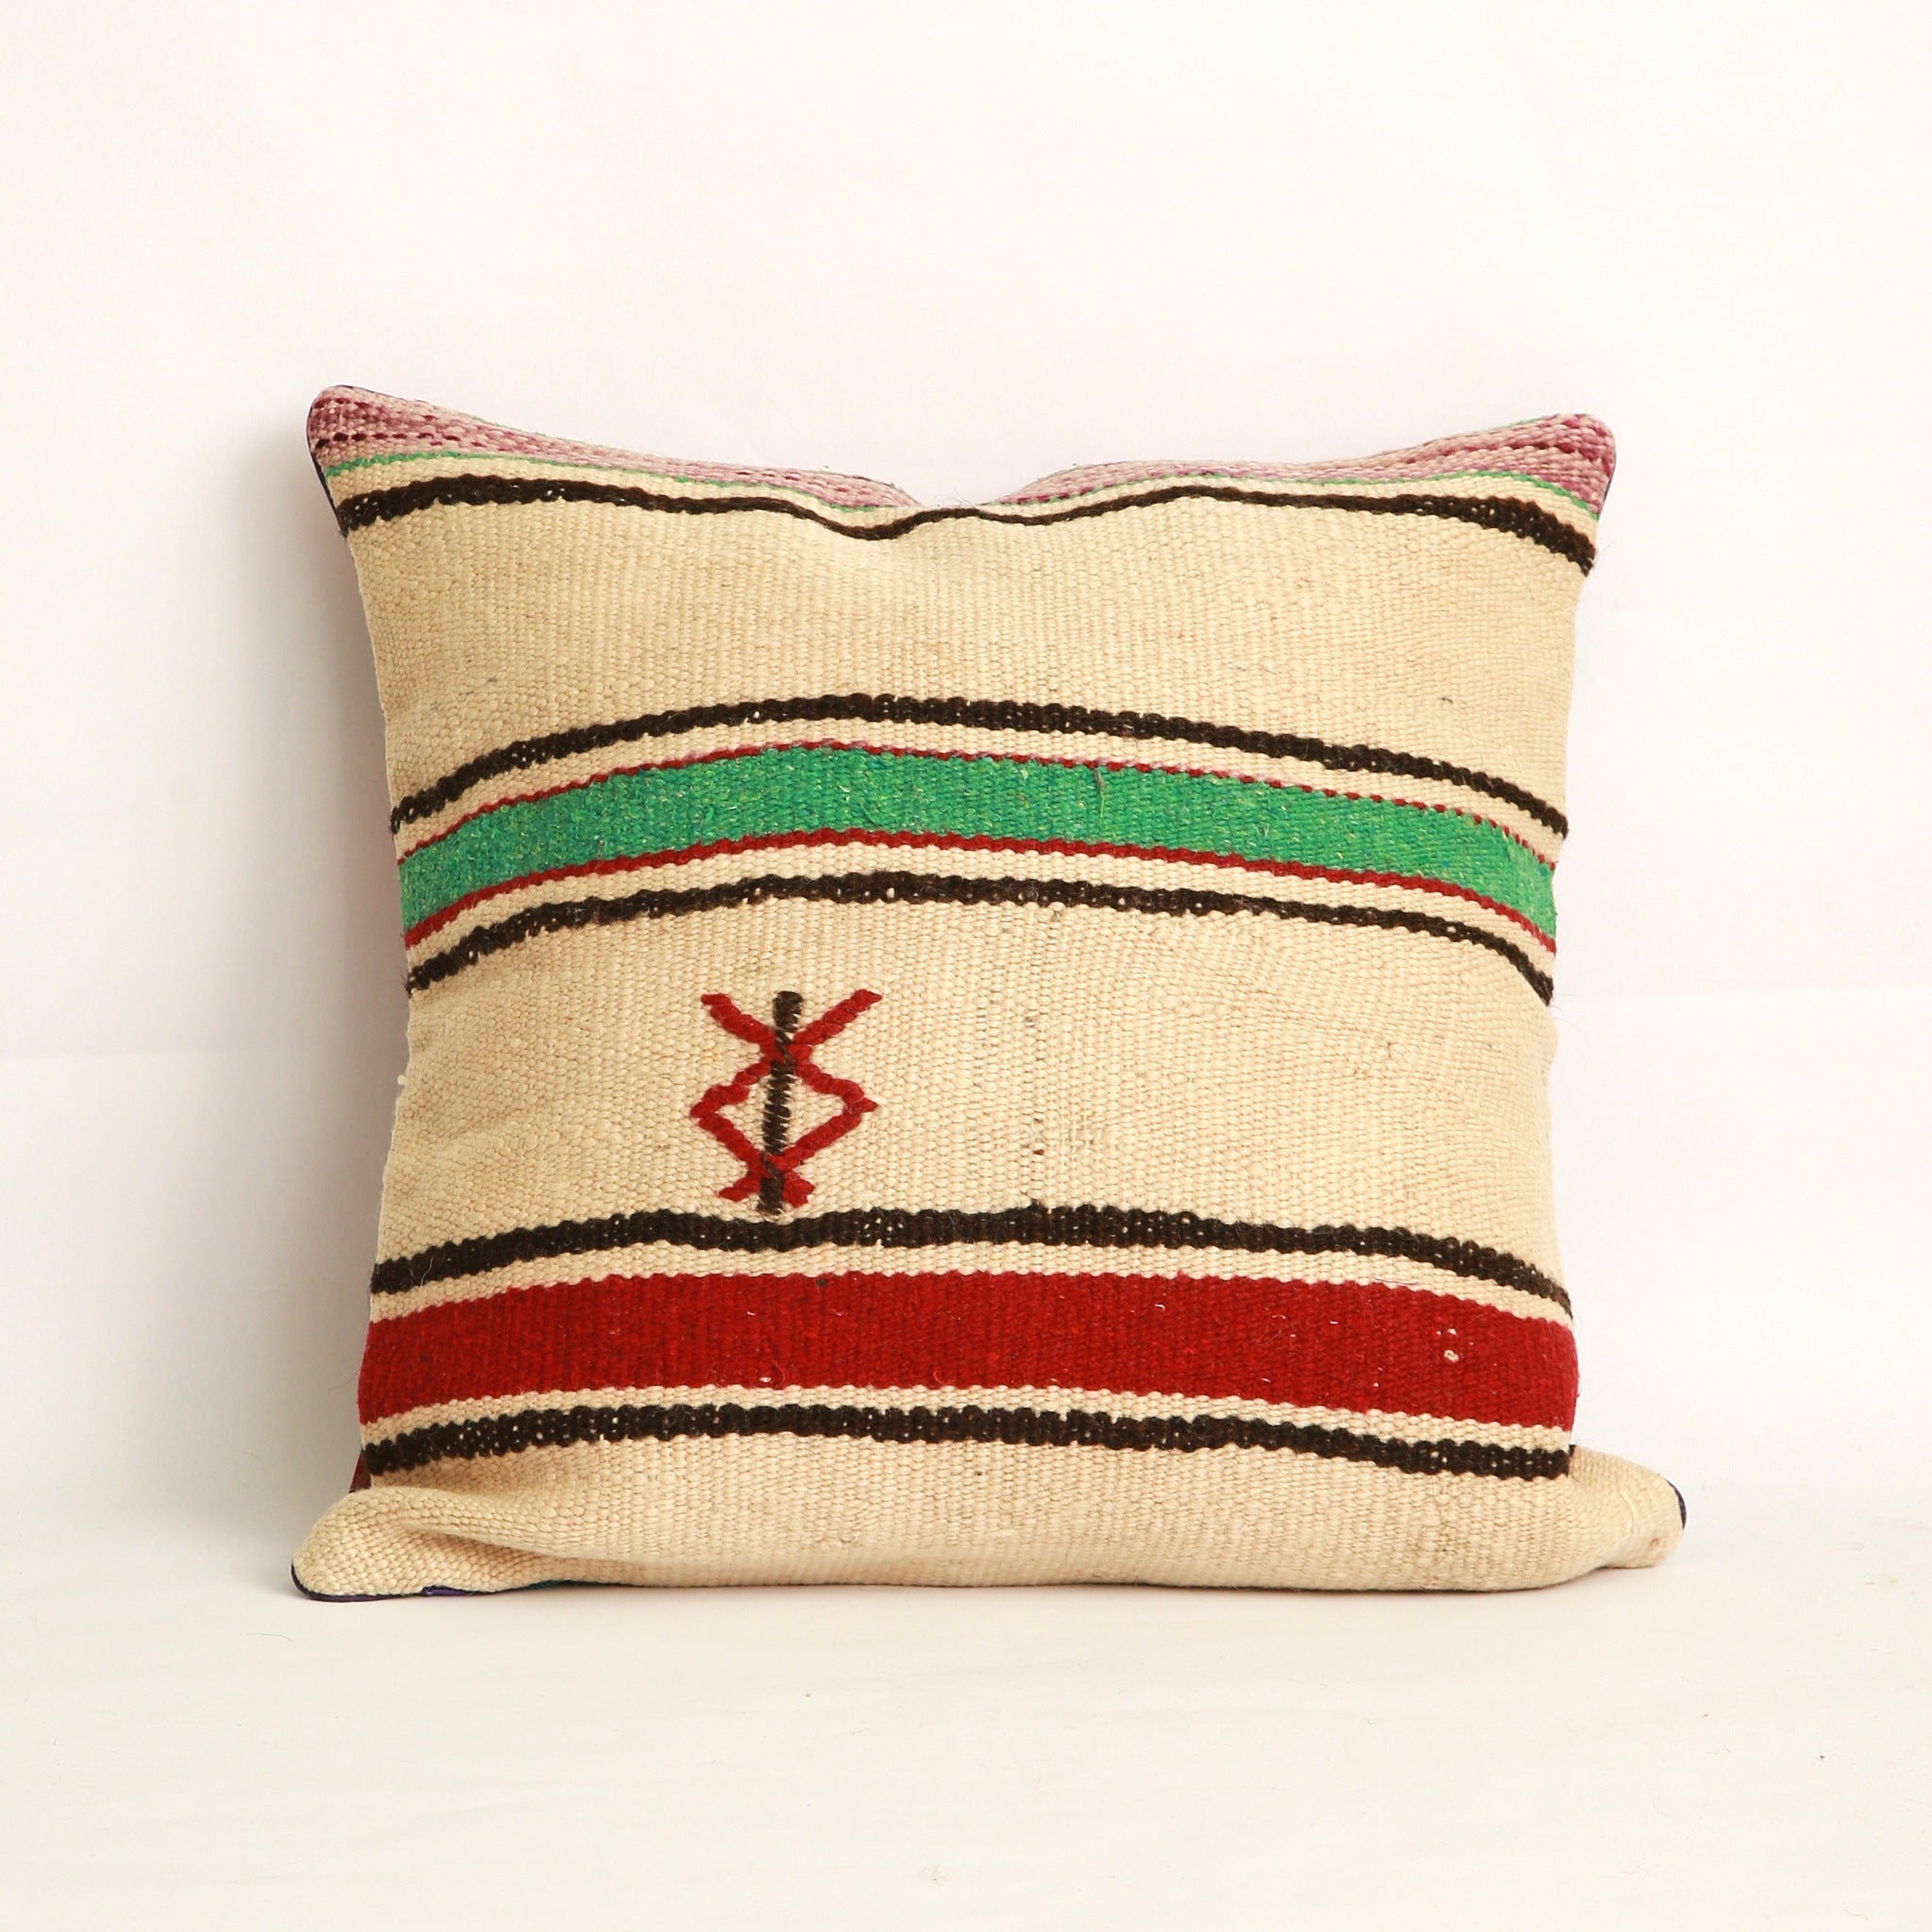 Cuscino realizzato con due tessuti diversi, uno da ogni lato, da questo lato appare  una coperta in lana vintage a righe  nere verde acqua e bordeaux con un simbolo Amazigh (berbero) ricamato a mano